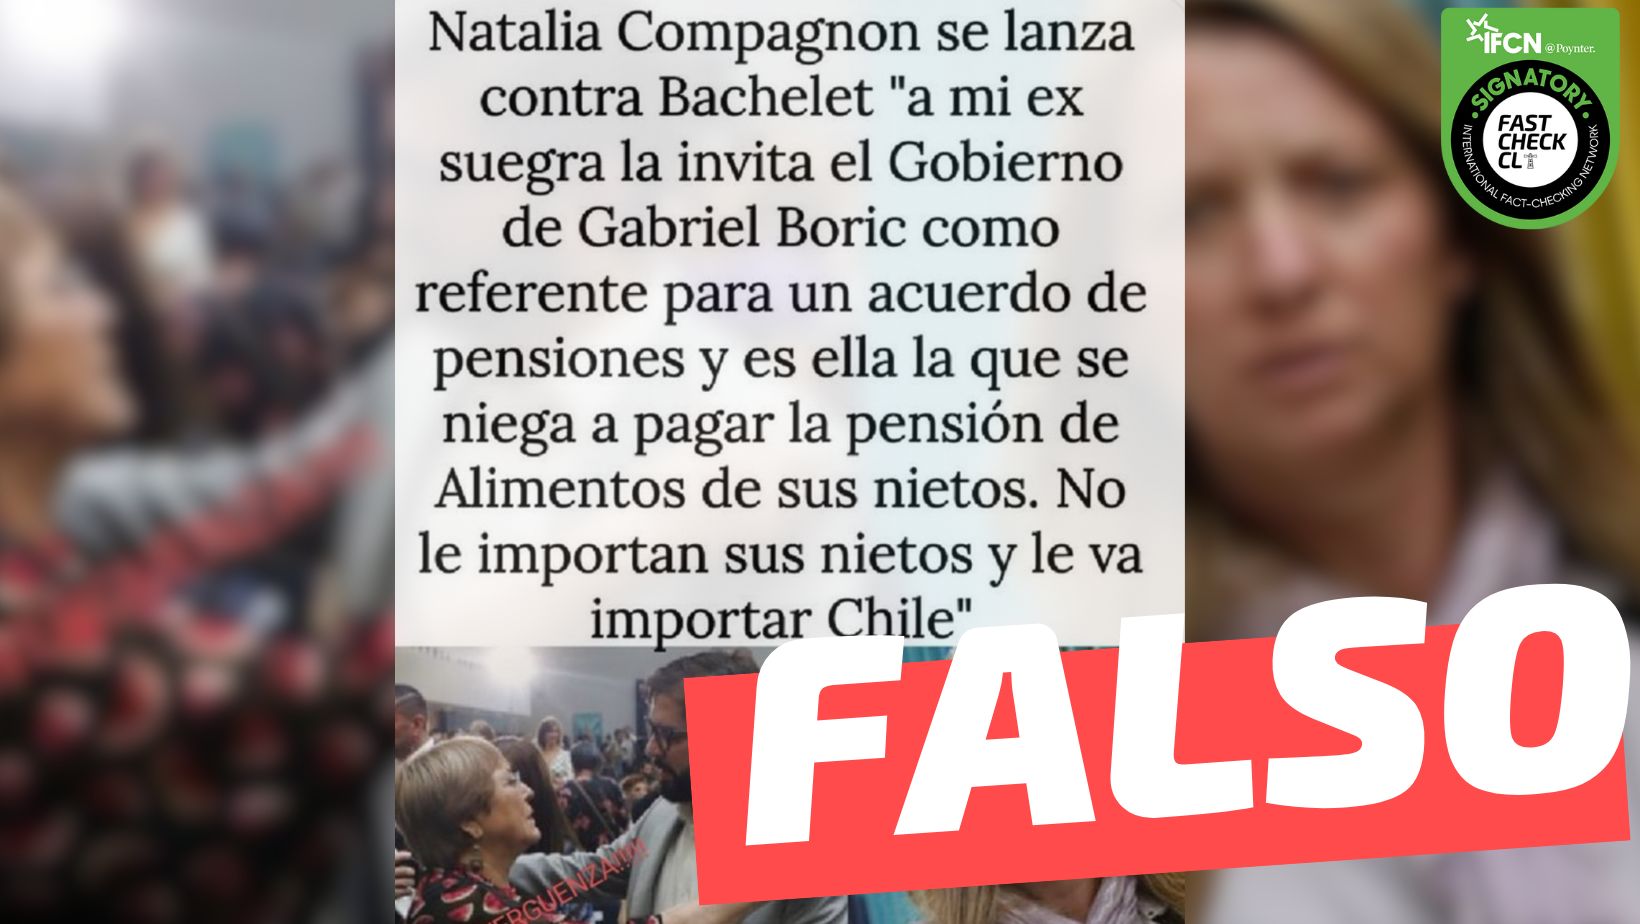 You are currently viewing “Natalia Compagnon: ‘A mi ex suegra (Bachelet) la invita el Gobierno como referente para un acuerdo de pensiones y es ella la que se niega a pagar la pensión de alimentos de sus nietos”: #Falso